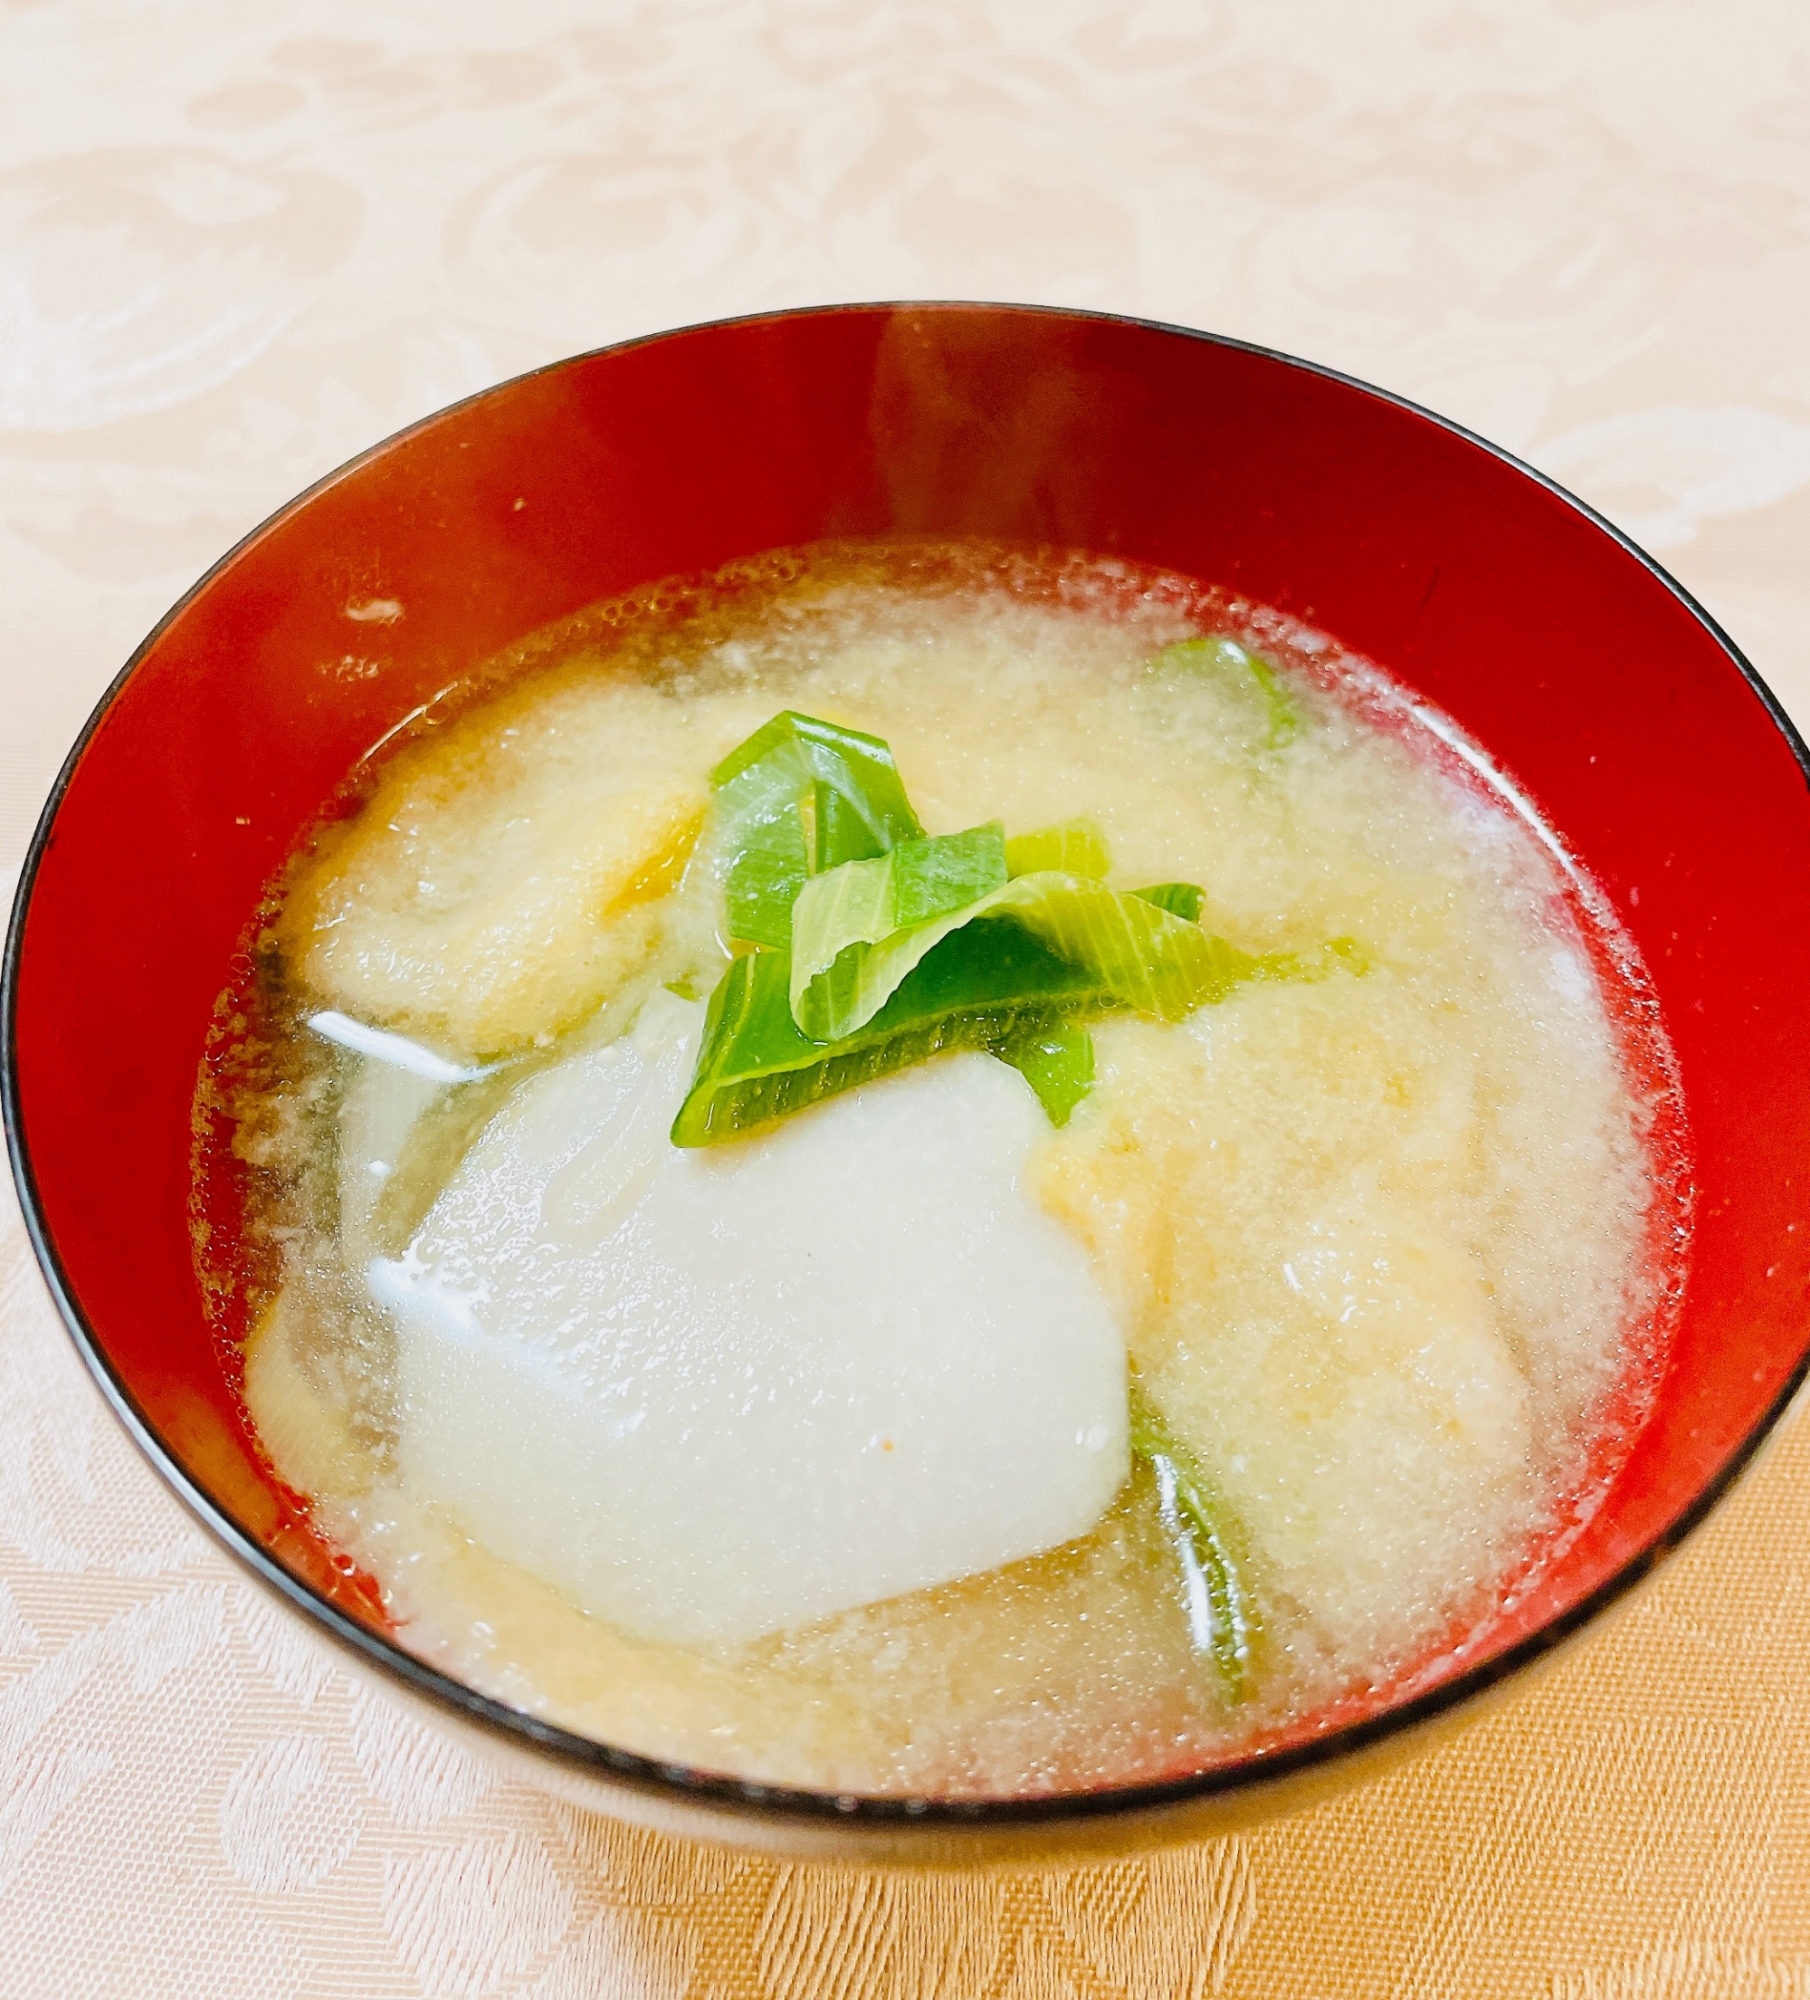 里芋と松山揚げのお味噌汁